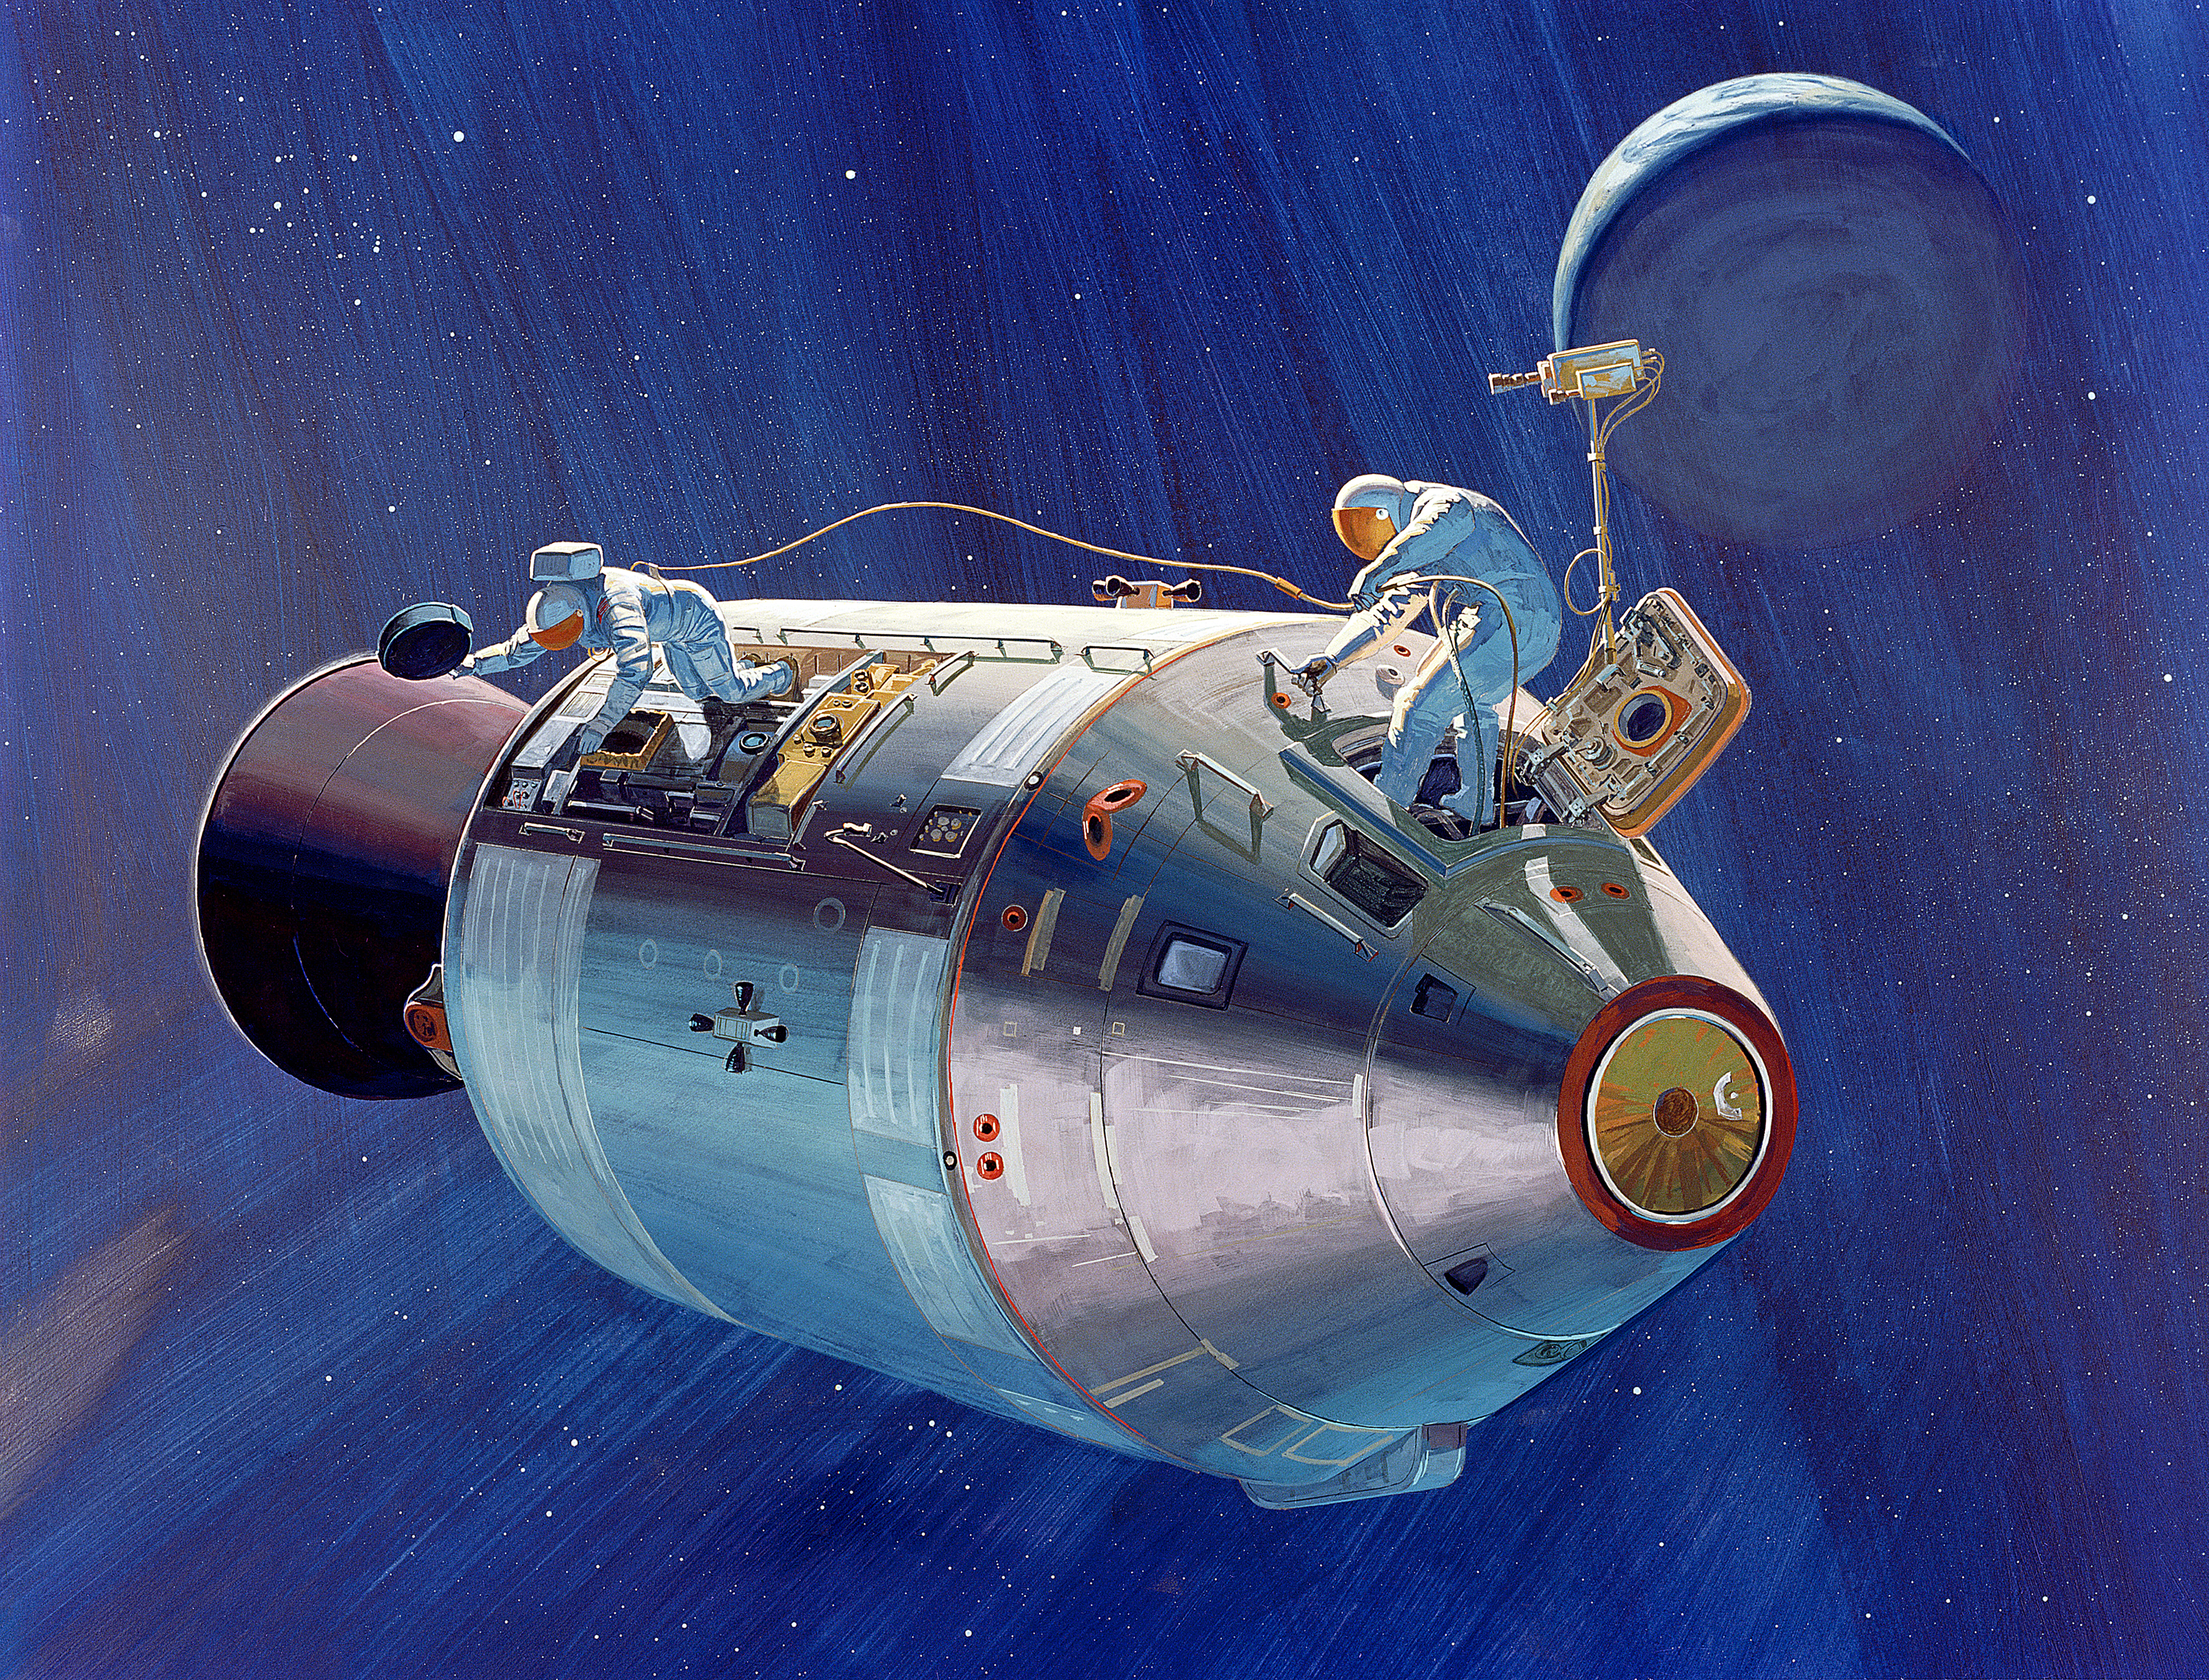 Названия советских космических кораблей. Аполлон 13 космический корабль. Космический корабль Аполлон 15. Космический корабль Аполлон 11. Лунный модуль Аполлон 15.